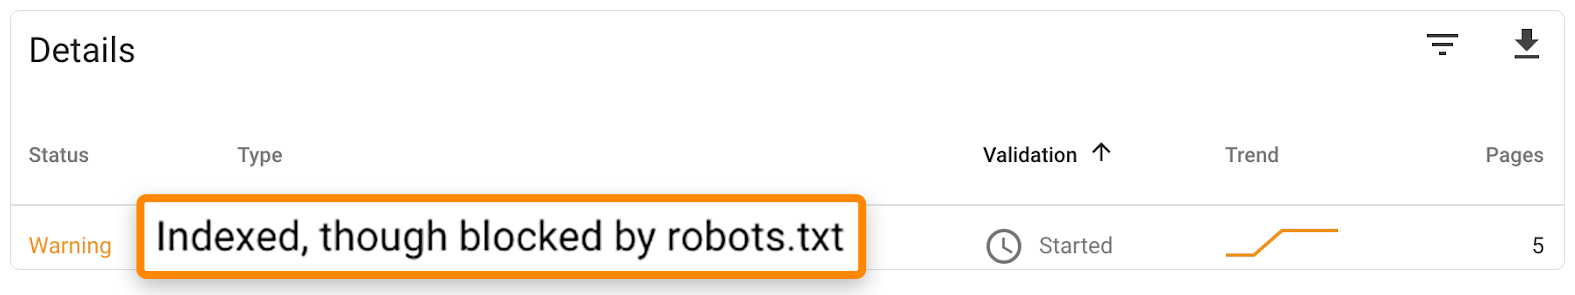  Advertencias de indexada pero bloqueado por robots.txt.